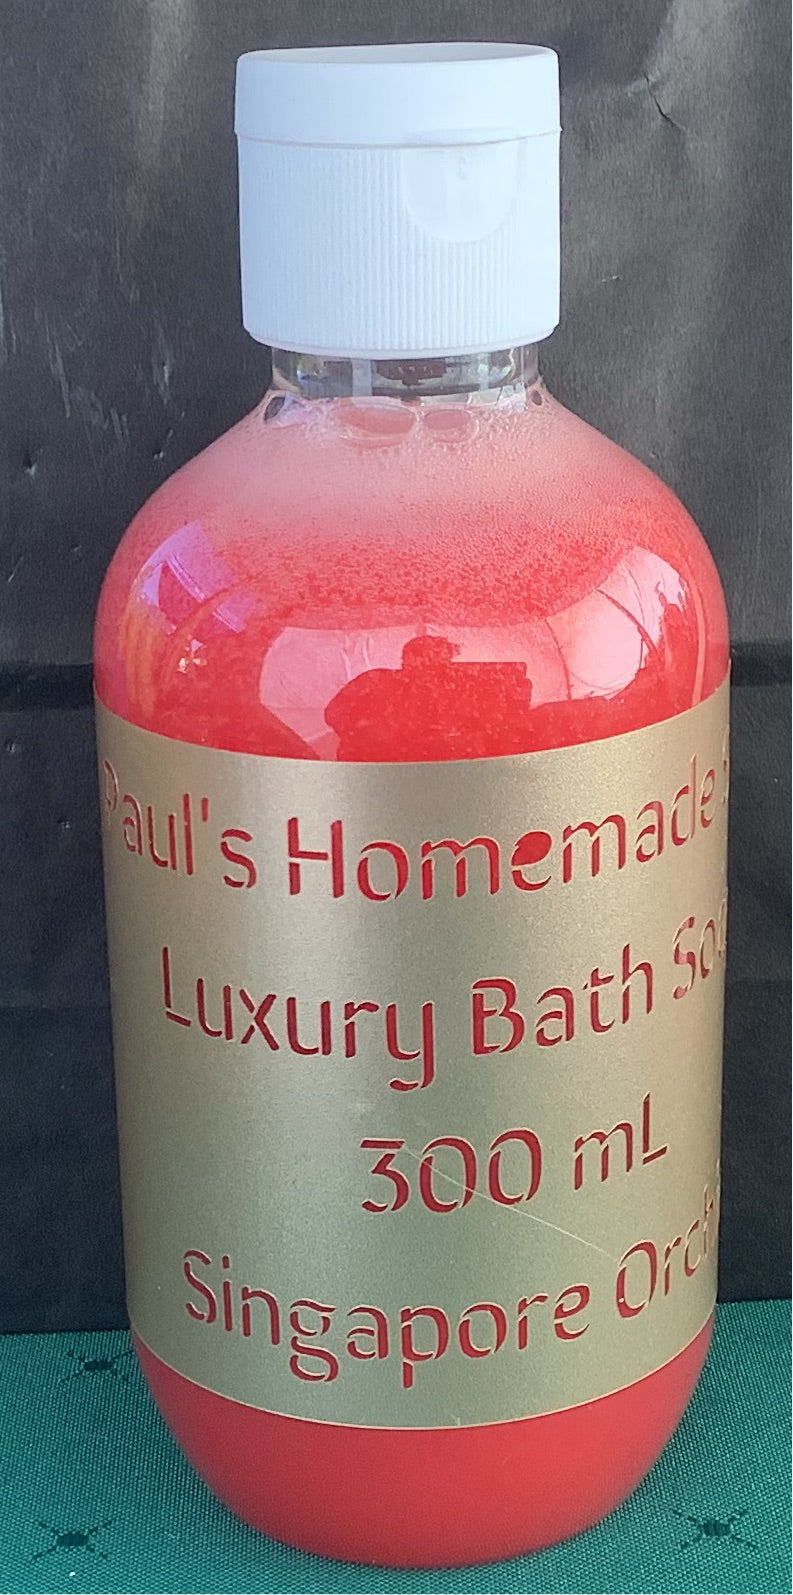 Singapore Orchid Luxury Bath Soap